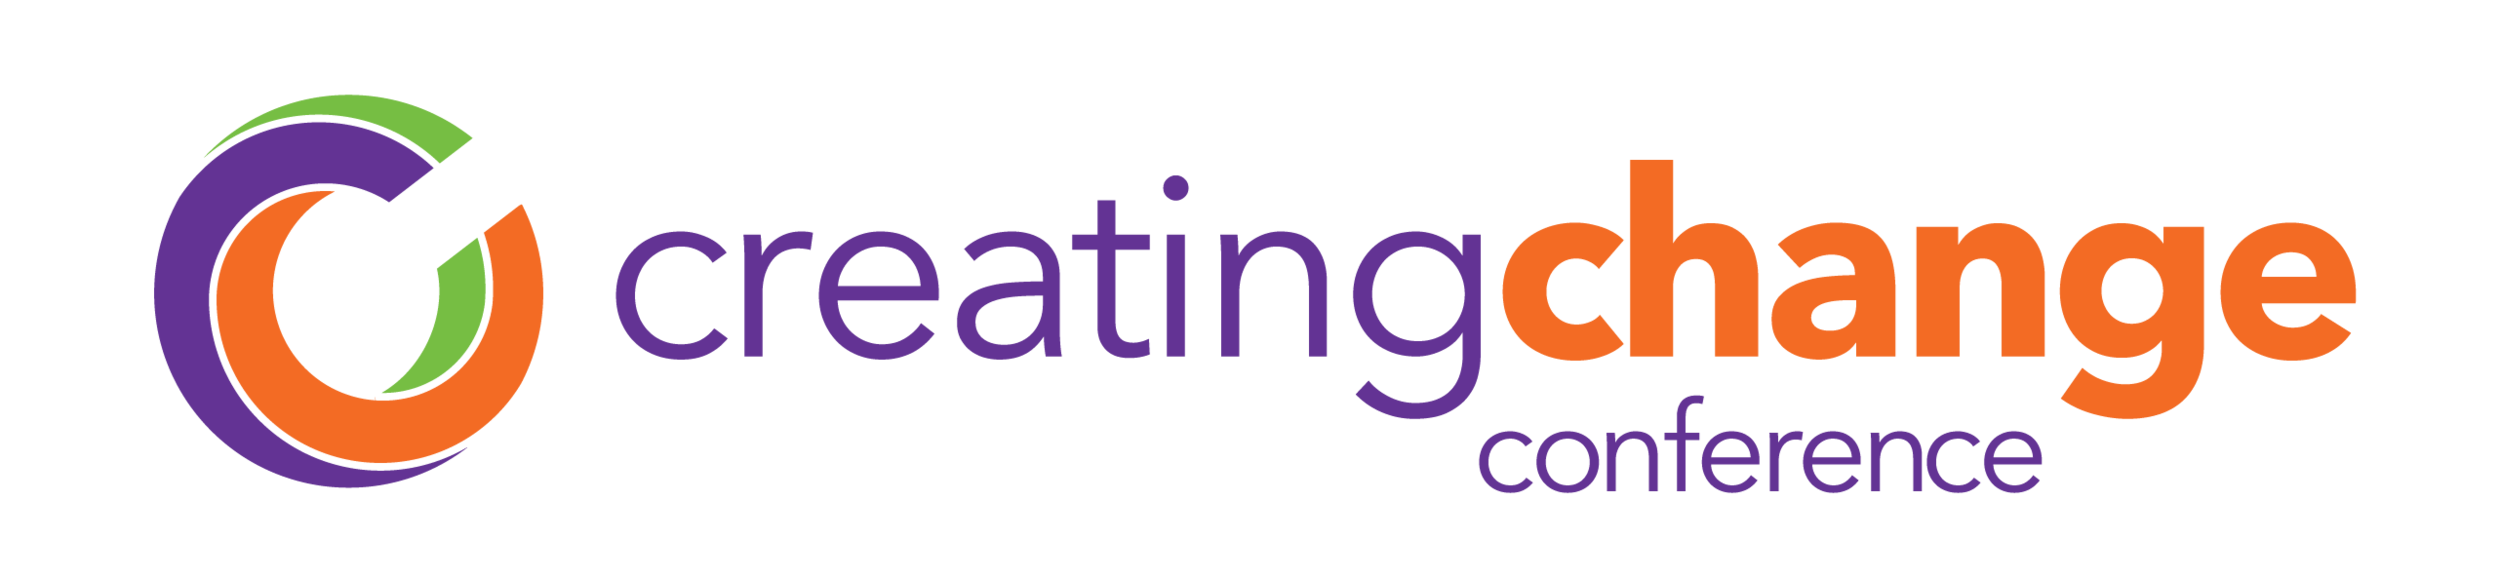 Creating-Change-Logo-01.png